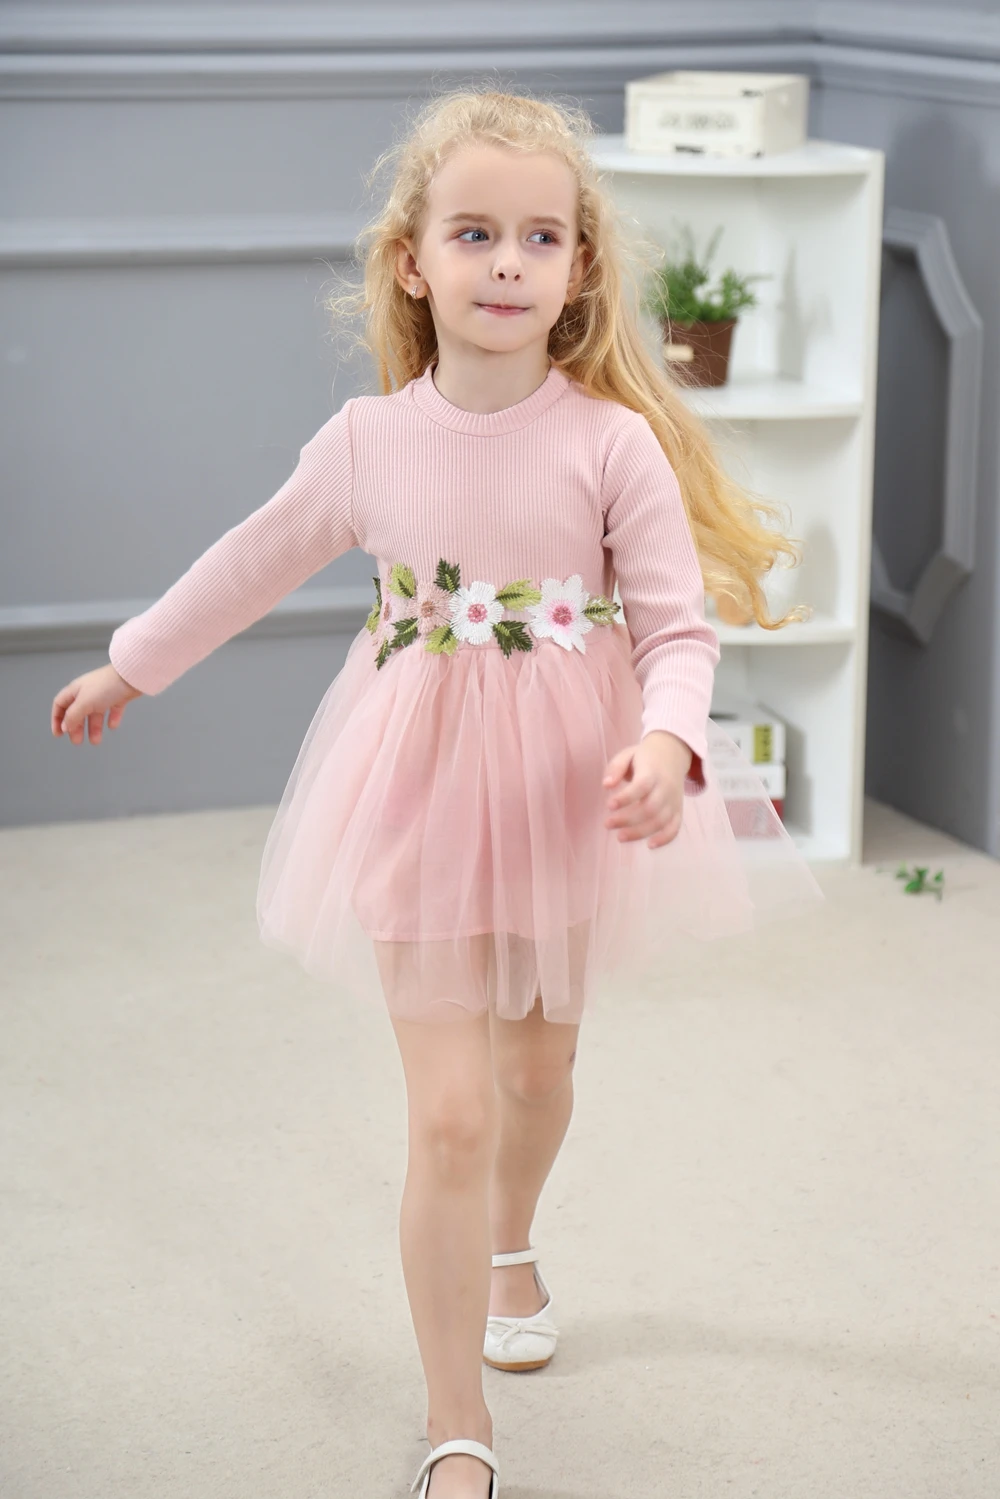 AiLe Rabbit/Брендовое платье с длинными рукавами для девочек новое осеннее платье-пачка принцессы с цветочным рисунком модная популярная детская одежда на свадьбу; k1